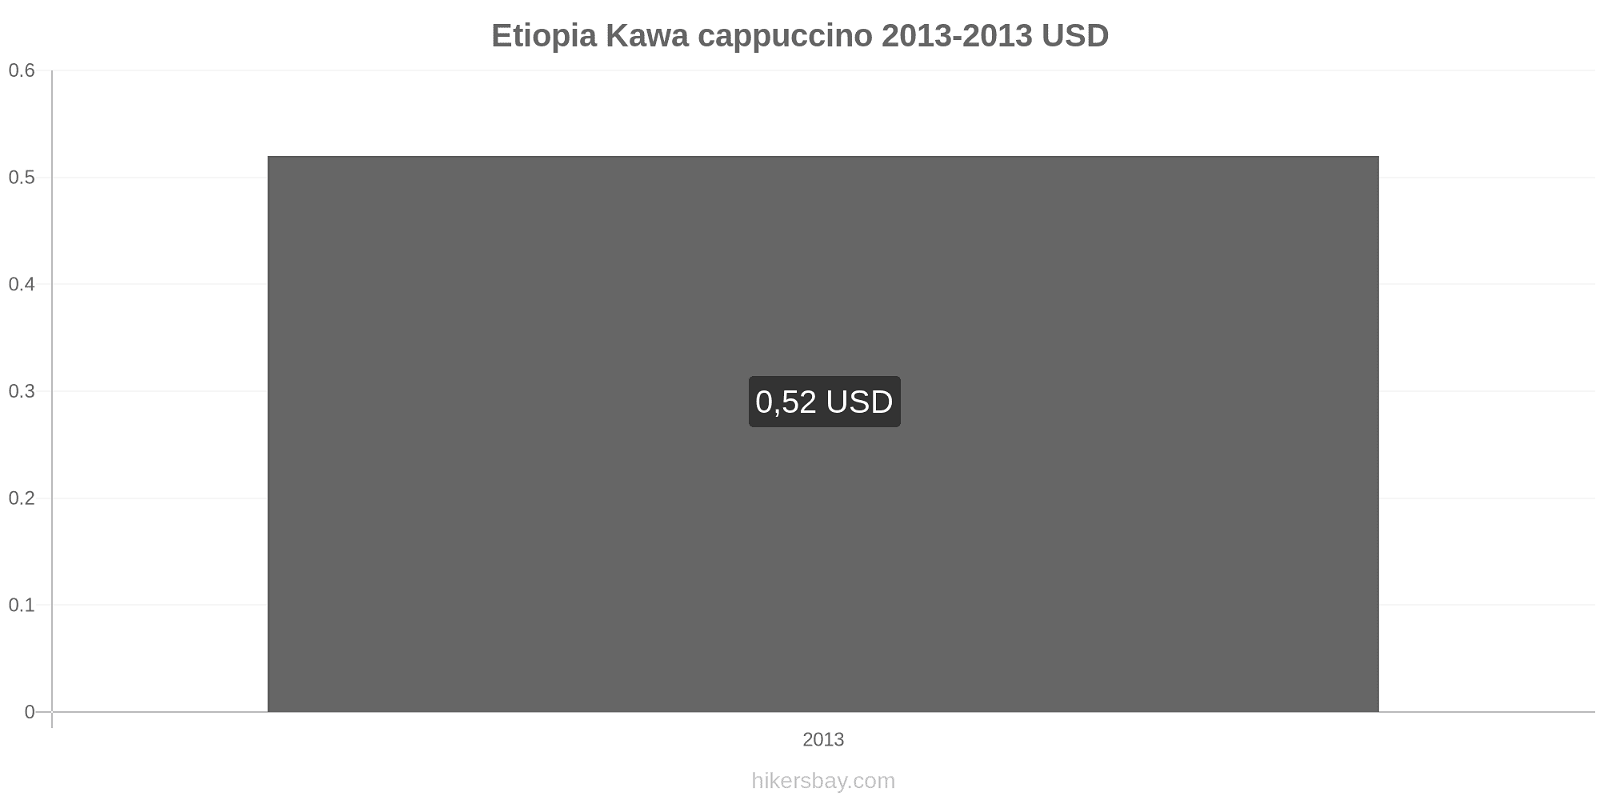 Etiopia zmiany cen Kawa cappuccino hikersbay.com